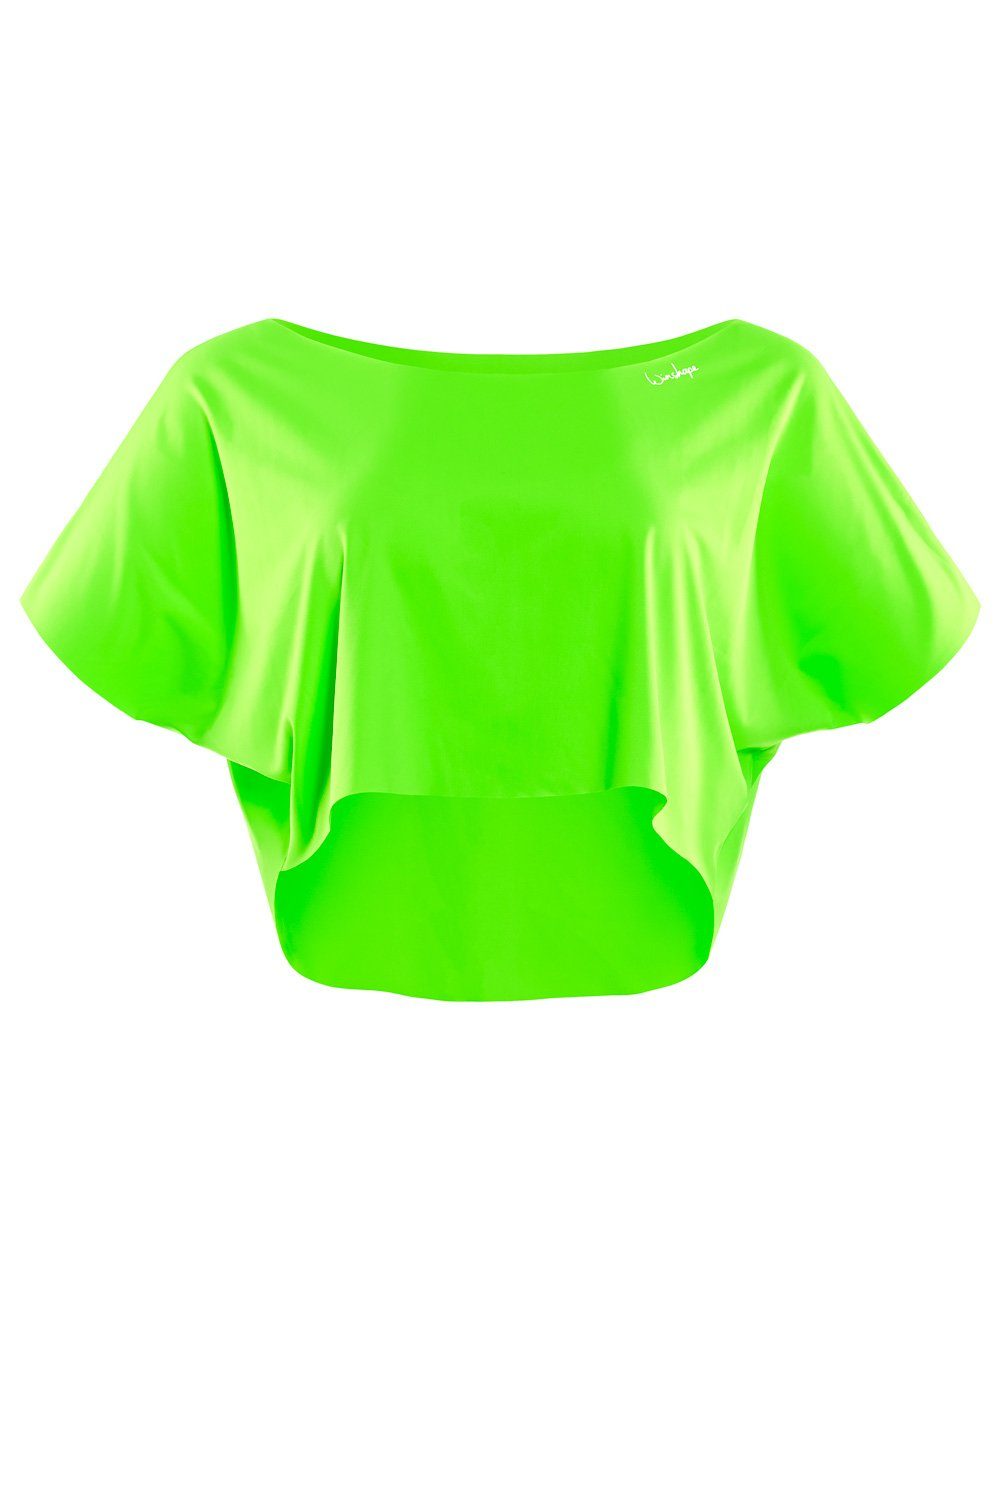 Functional grün neon DT104 Oversize-Shirt Winshape